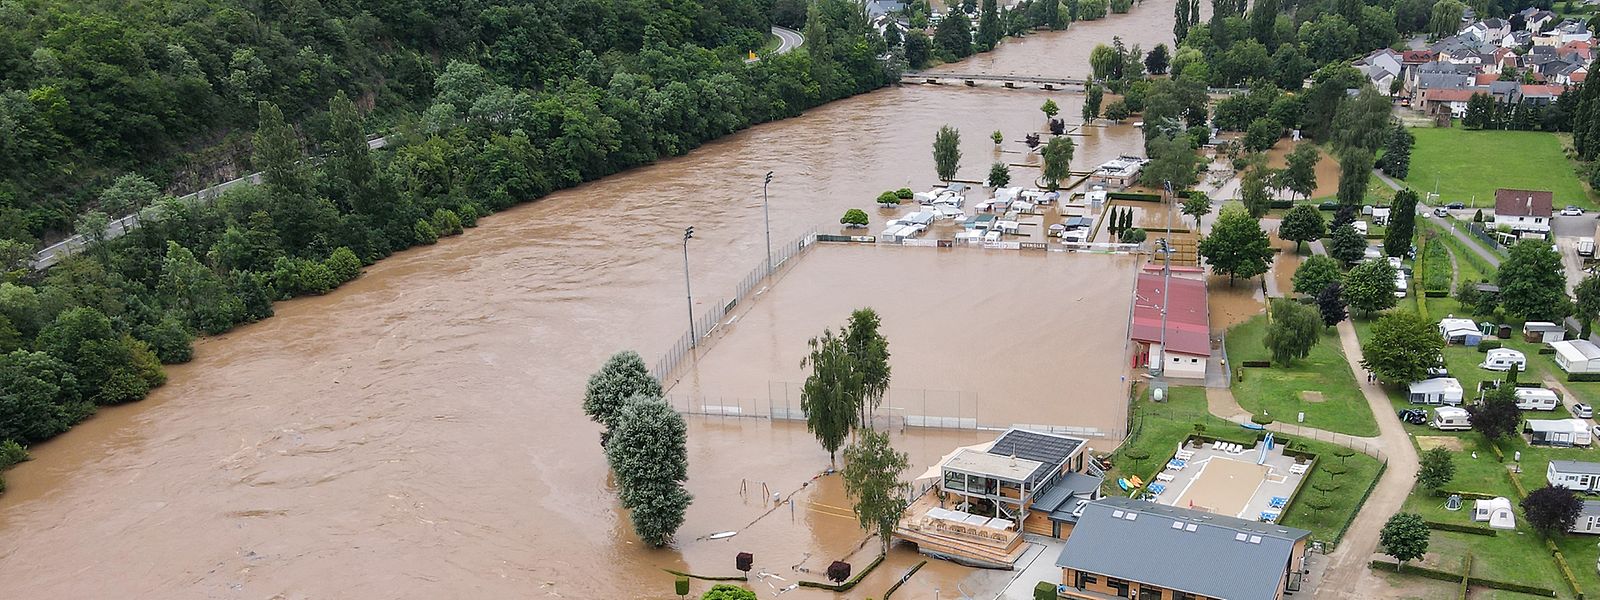 Les inondations du 14 juillet 2021 ont causé des dégâts de plusieurs millions d'euros au Luxembourg. Le fait qu'aucune personne n'ait perdu la vie est un miracle.